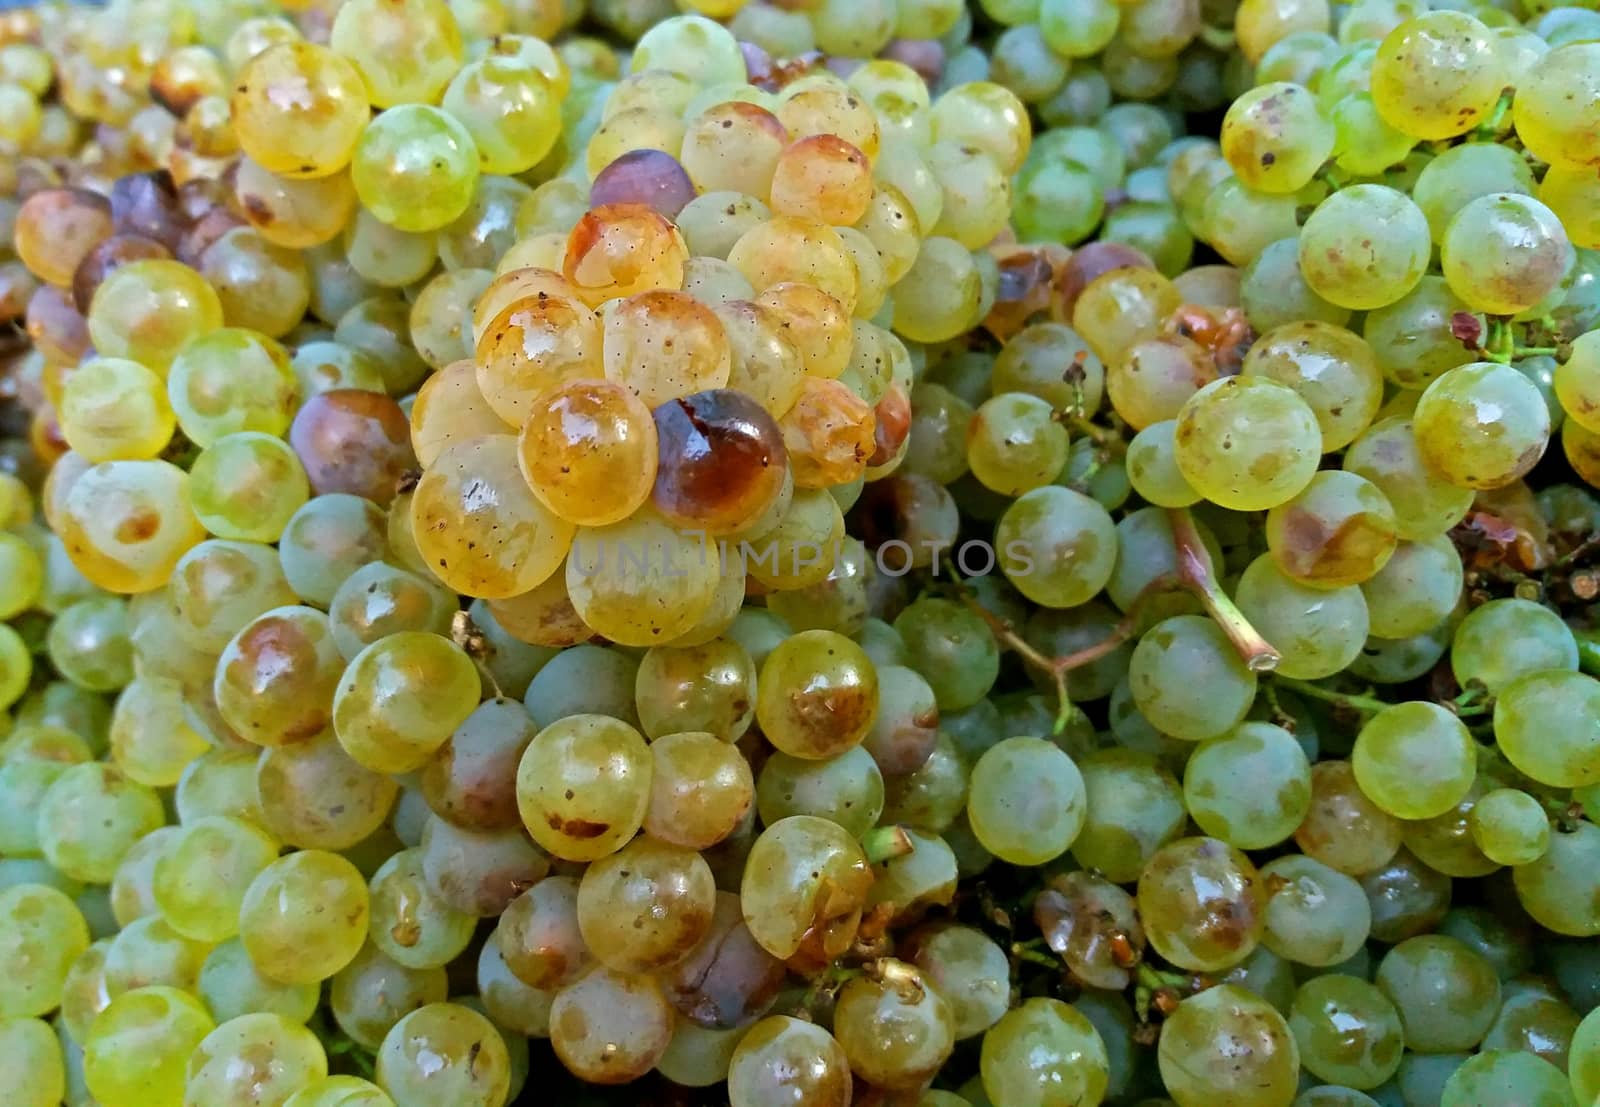 Sun ripened white wine grapes